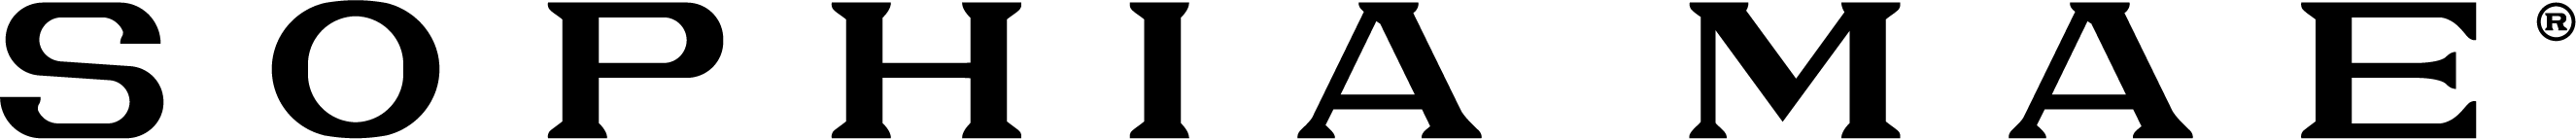 SOPHIA MAE logo